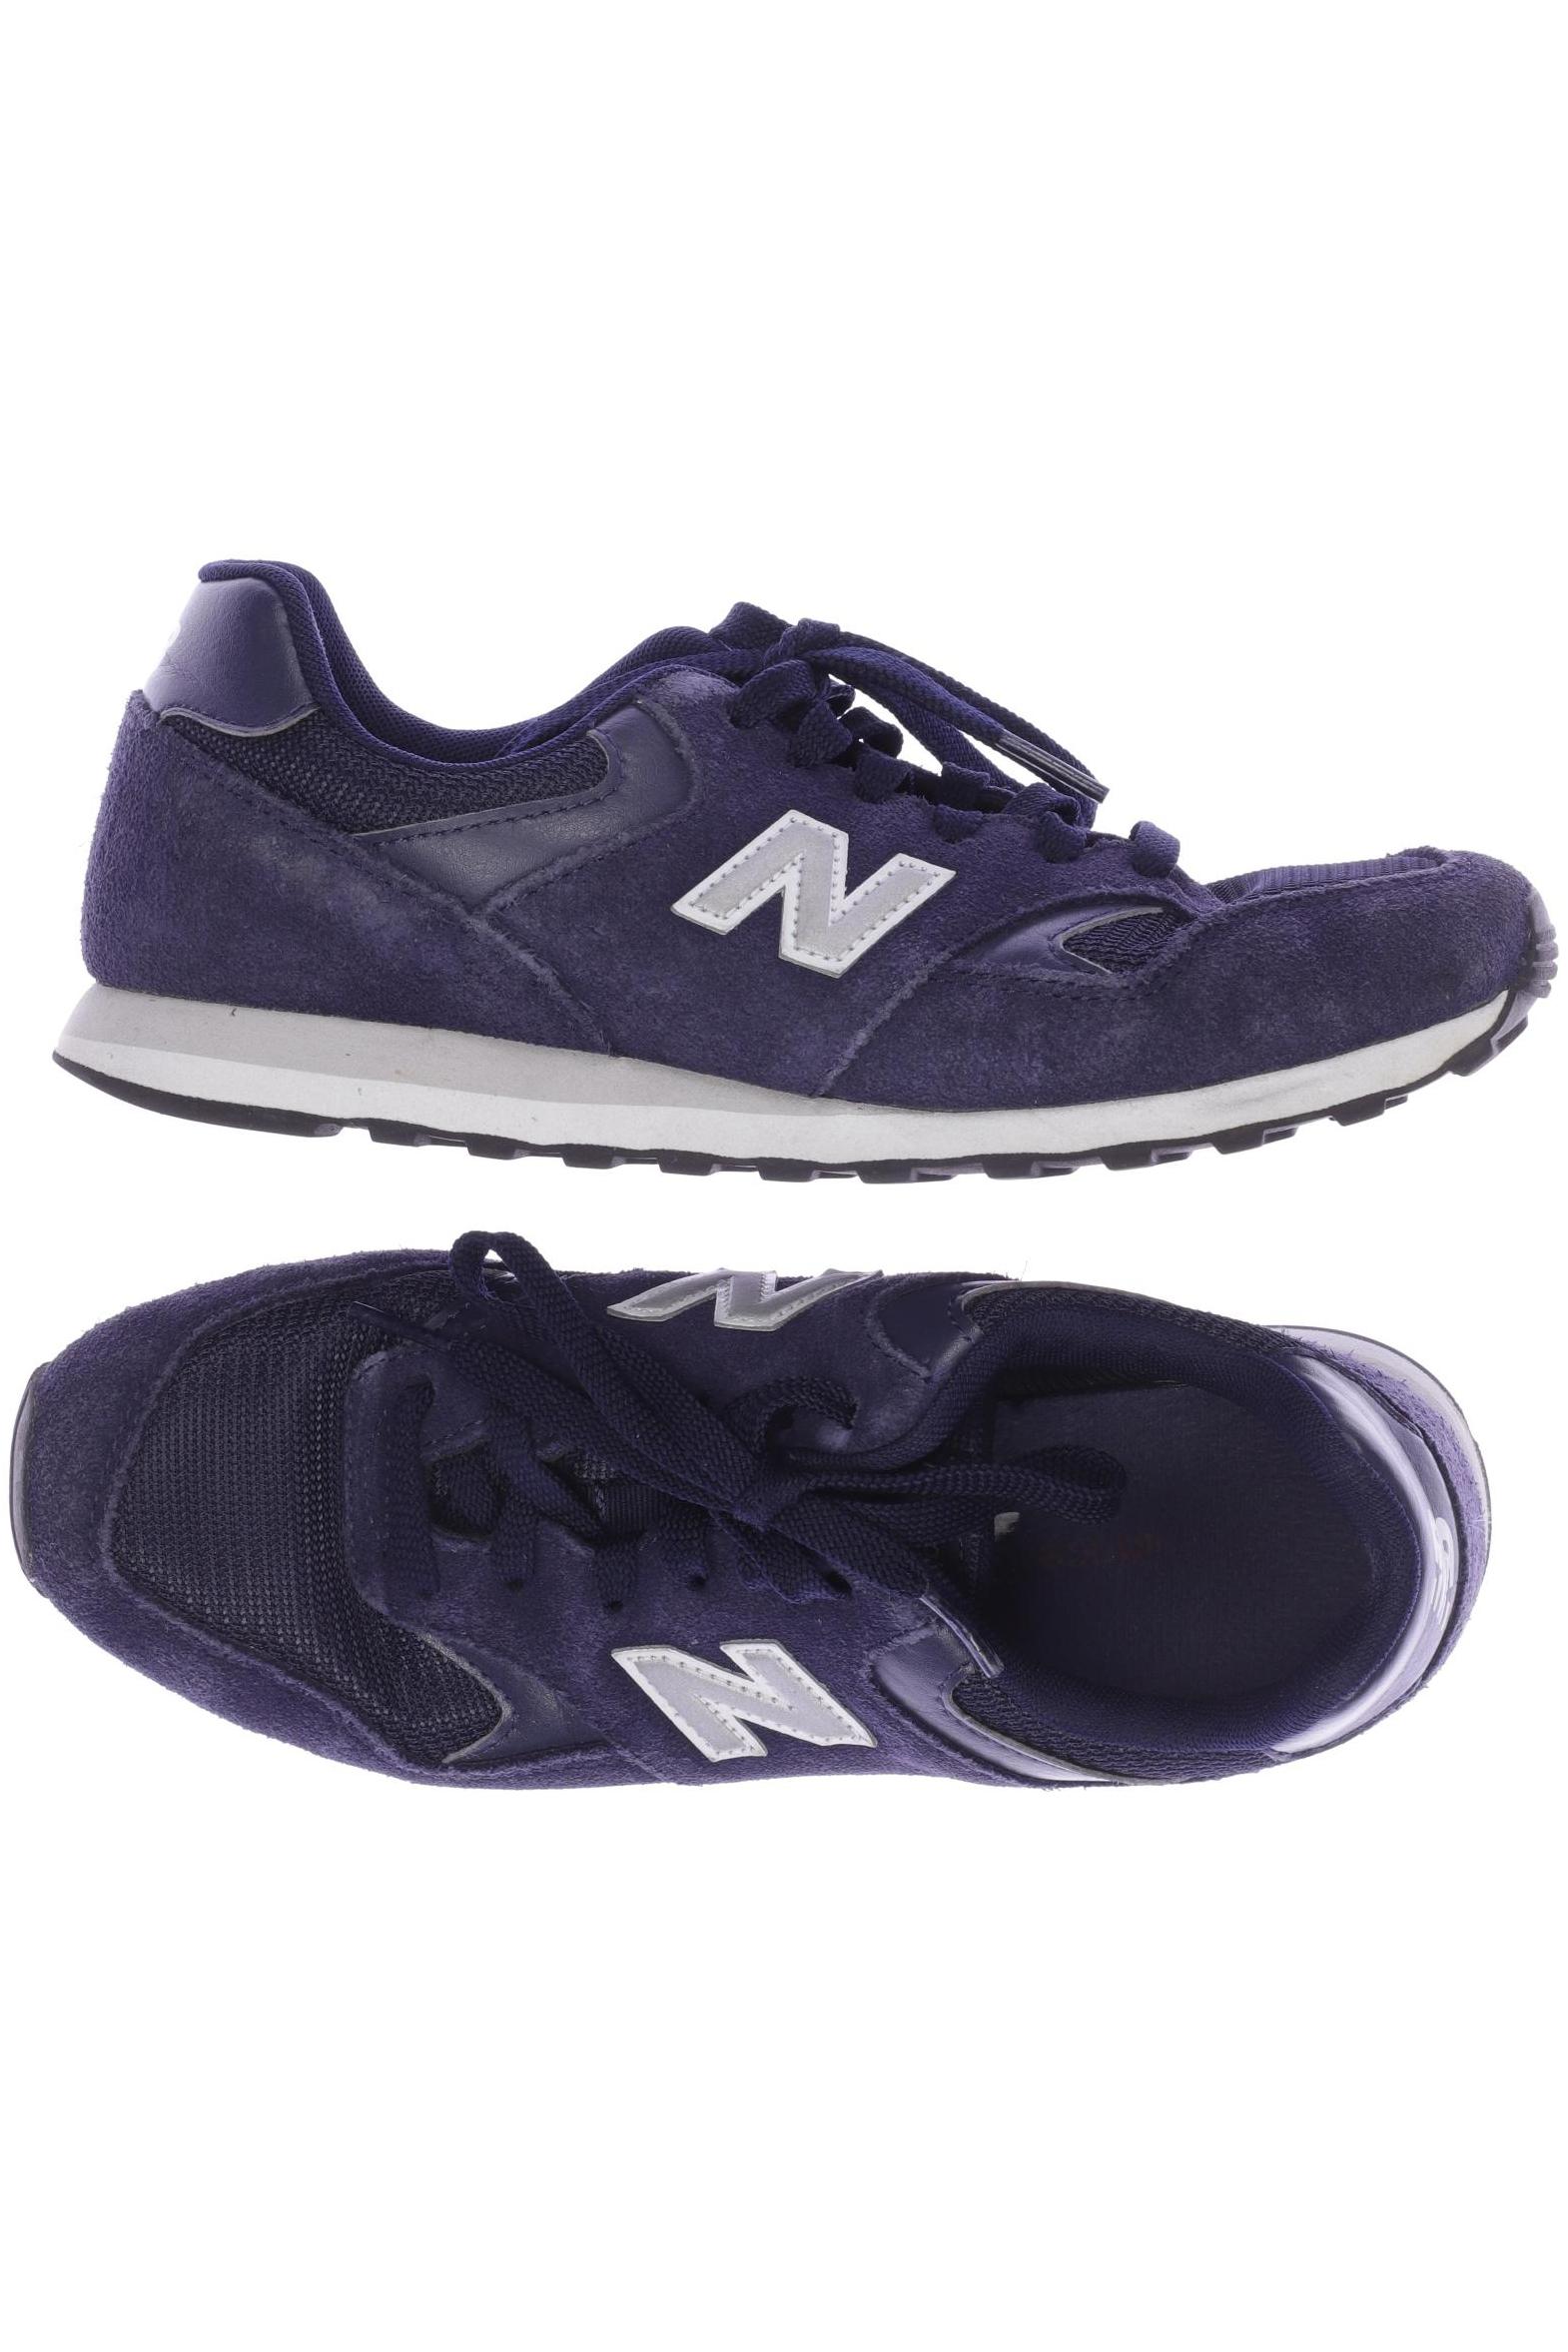 New Balance Herren Sneakers, marineblau von New Balance